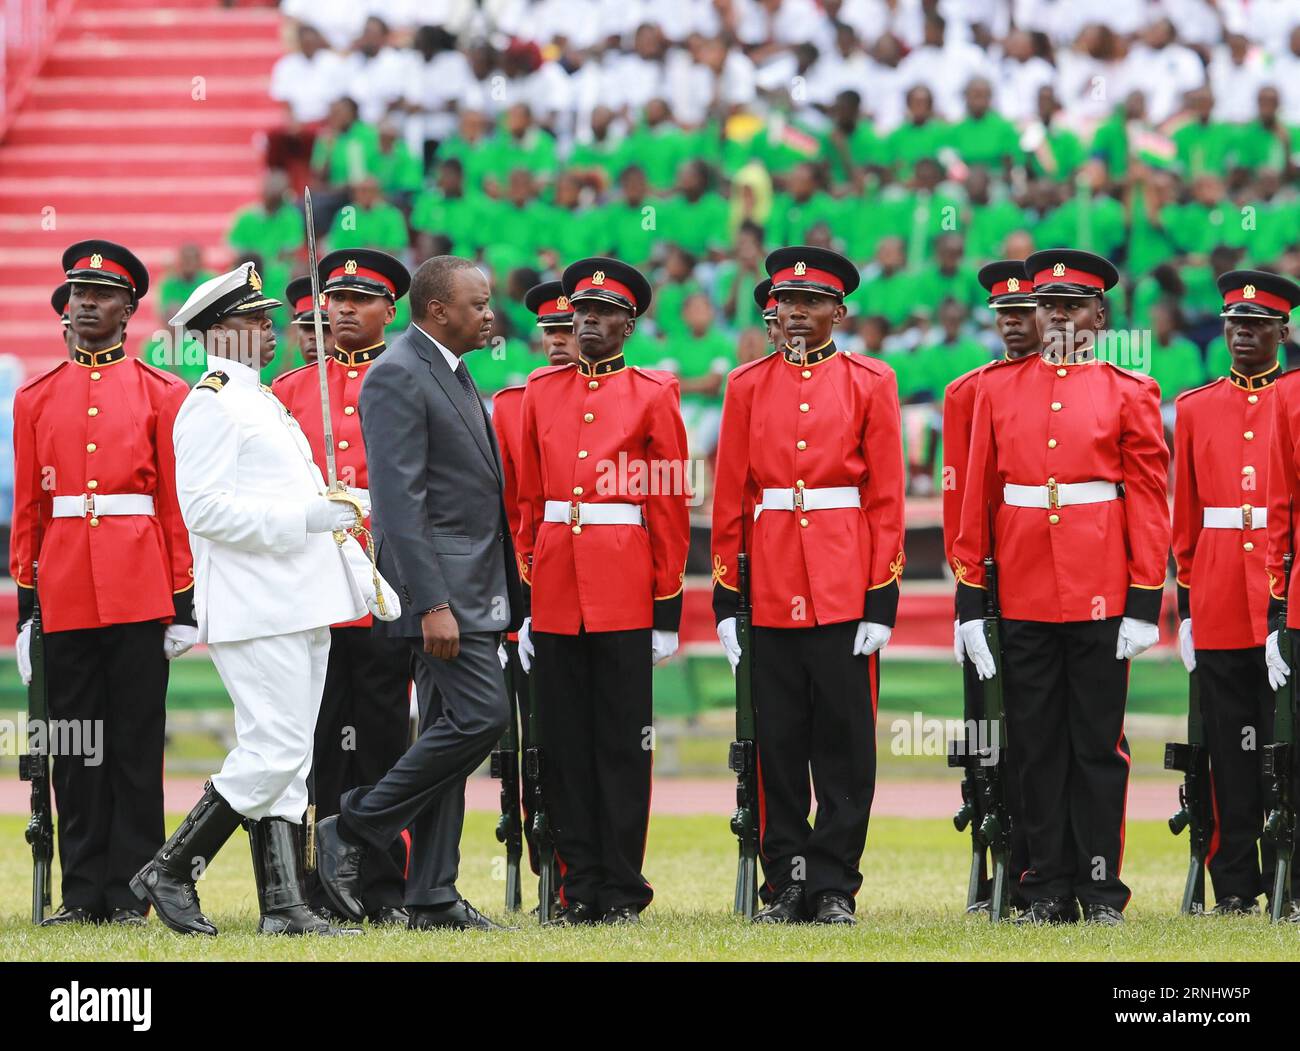 Feierlichkeiten zu Kenias 53. Unabhängigkeitstag in Nairobi (161212) -- NAIROBI, 12 dicembre 2016 -- il presidente keniota Uhuru Kenyatta (fronte R) ispeziona la forza di difesa del Kenya durante le celebrazioni per celebrare il 53 ° anniversario dell'indipendenza della nazione al Nyayo National Stadium di Nairobi, Kenya, 12 dicembre 2016. ) (dtf) GIORNATA DELL'INDIPENDENZA KENYA-NAIROBI PanxSiwei PUBLICATIONxNOTxINxCHN celebrazioni del Kenya 53 giorno dell'indipendenza a Nairobi 161212 Nairobi DEC 12 2016 il presidente keniota Uhuru fronte keniota ispeziona la forza di difesa del Kenya durante le celebrazioni per celebrare il 53° anniversario della Foto Stock